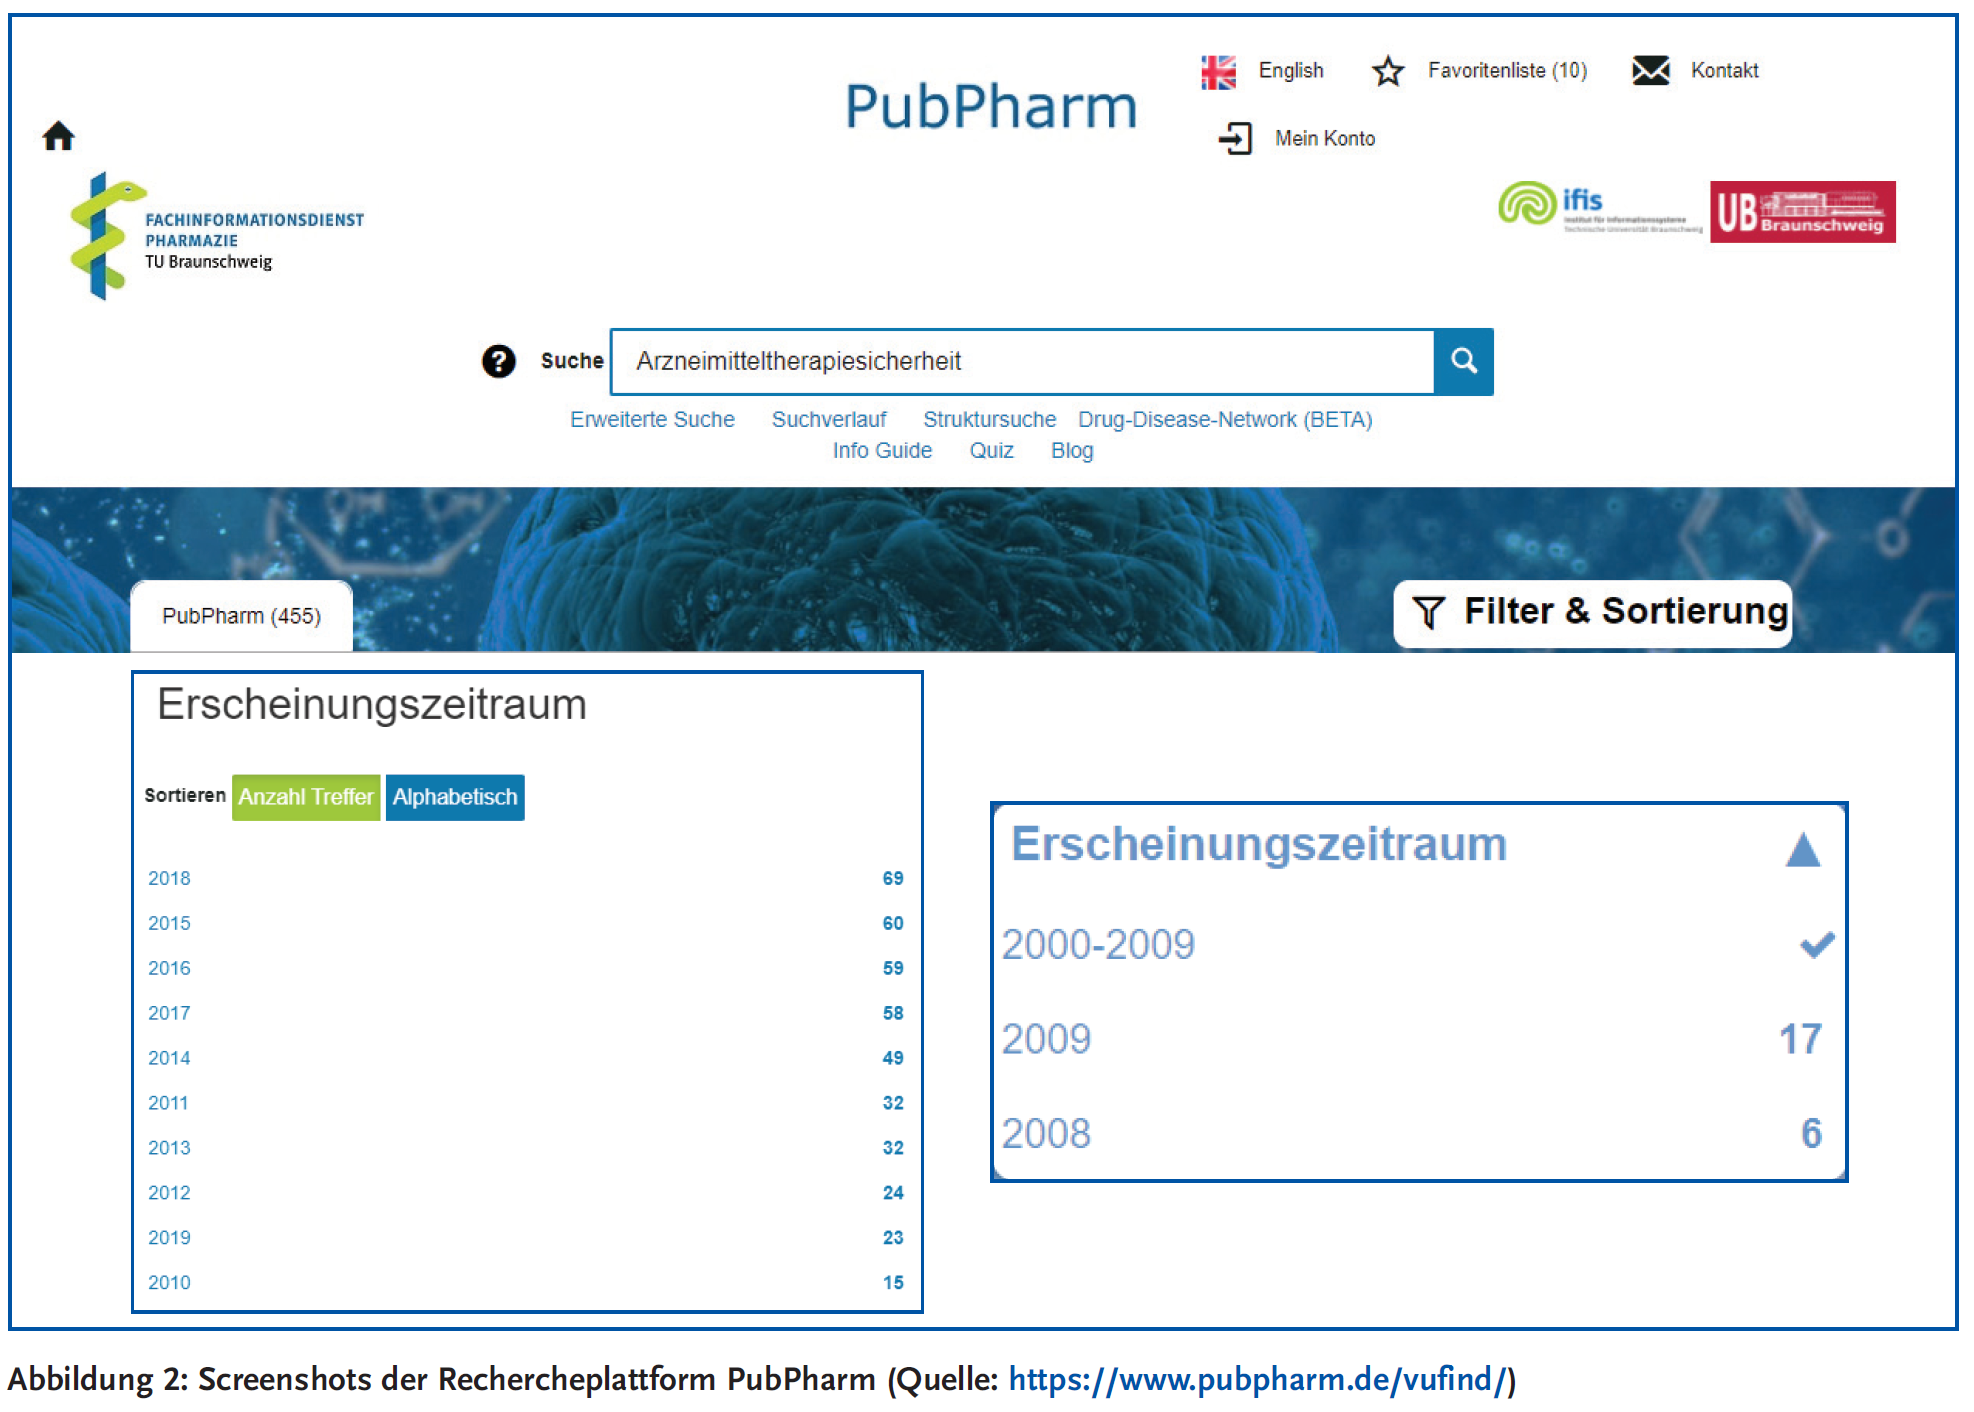 Abbildung 2: Screenshots der Rechercheplattform PubPharm (Quelle: https://www.pubpharm.de/vufind/)